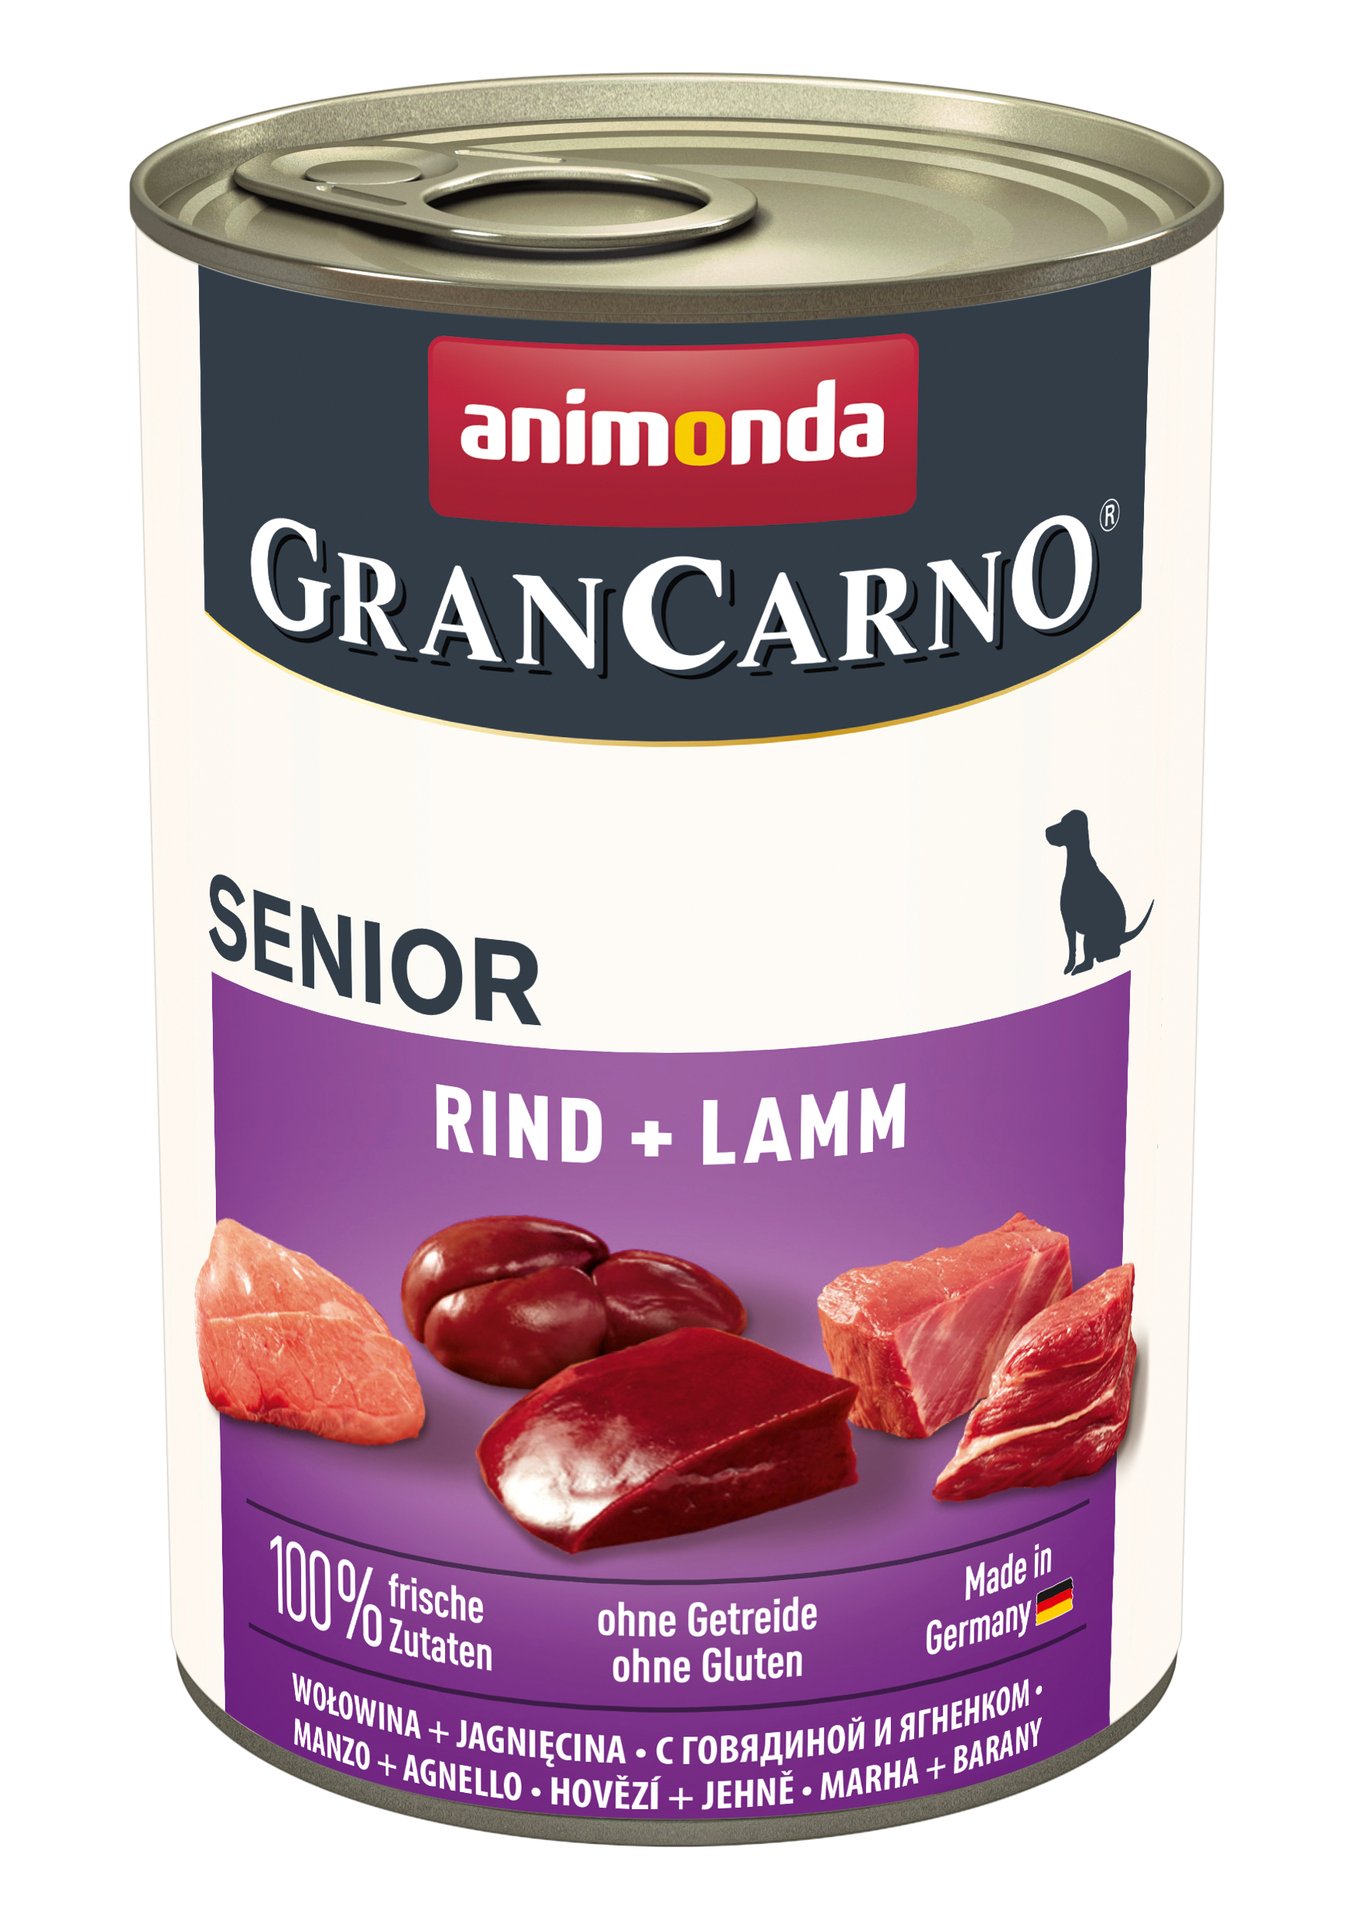 animonda dog grancarno senior rind + lamm